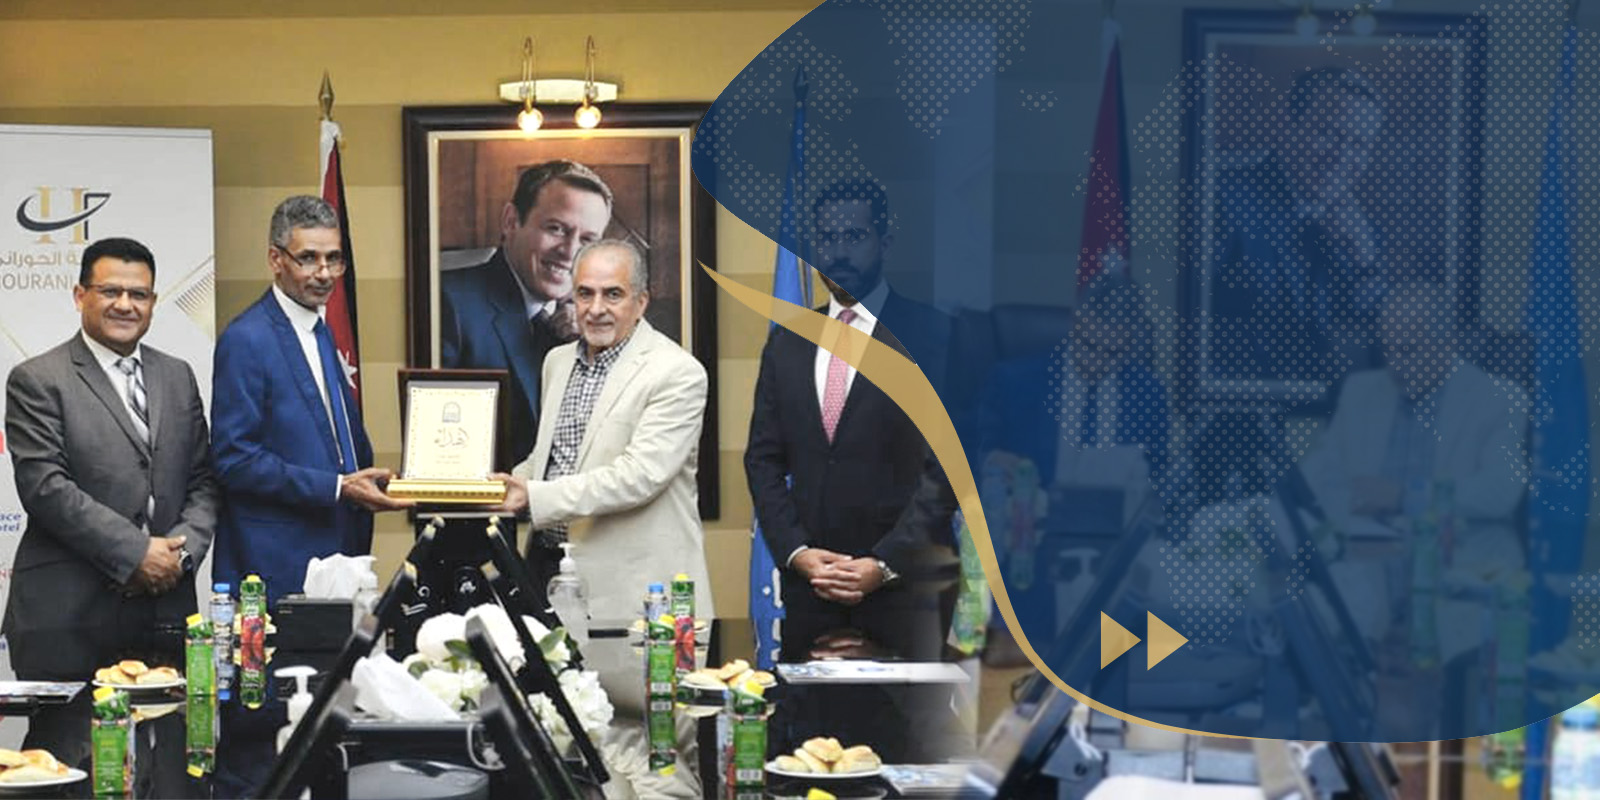 توقيع اتفاقية للتعاون العلمي بين جامعة سرت وجامعة عمان الأهلية بالمملكة الأردنية.